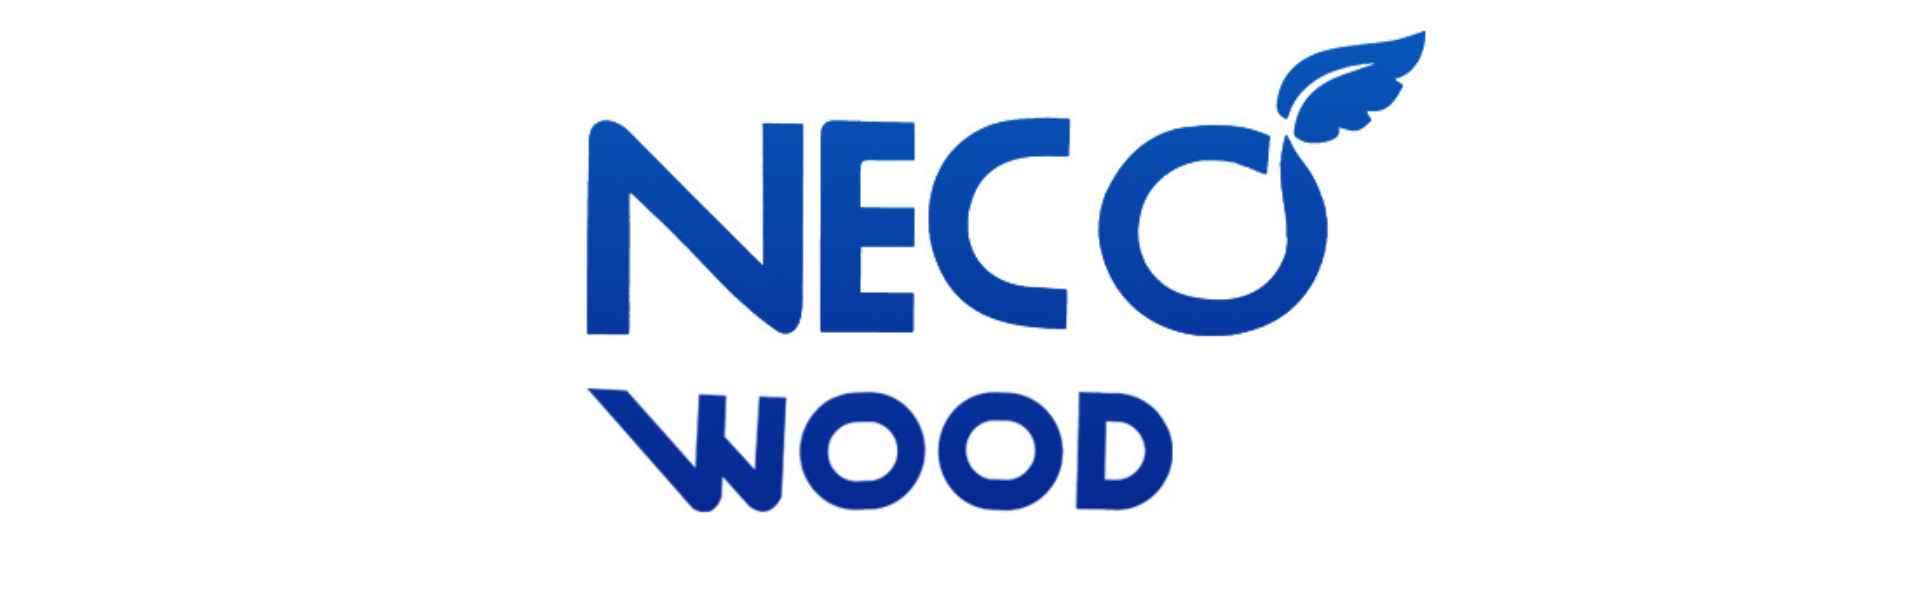 Necowood